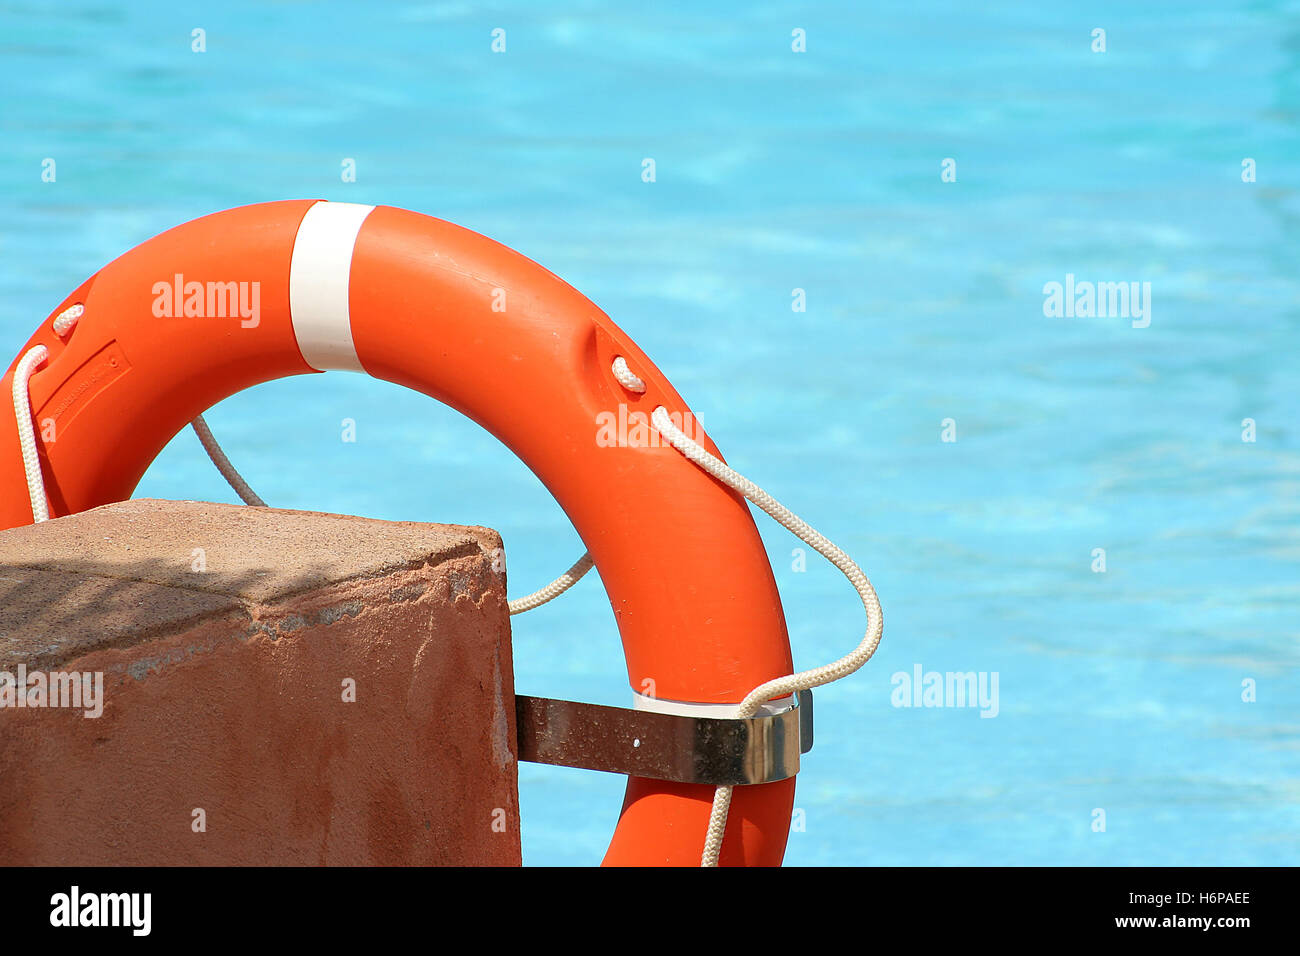 Blu-turchese salva piscina arancione lifebelt affogare i bagni pubblici piscina piscina all'aperto Centro balneare delle acque di balneazione nuoto Foto Stock